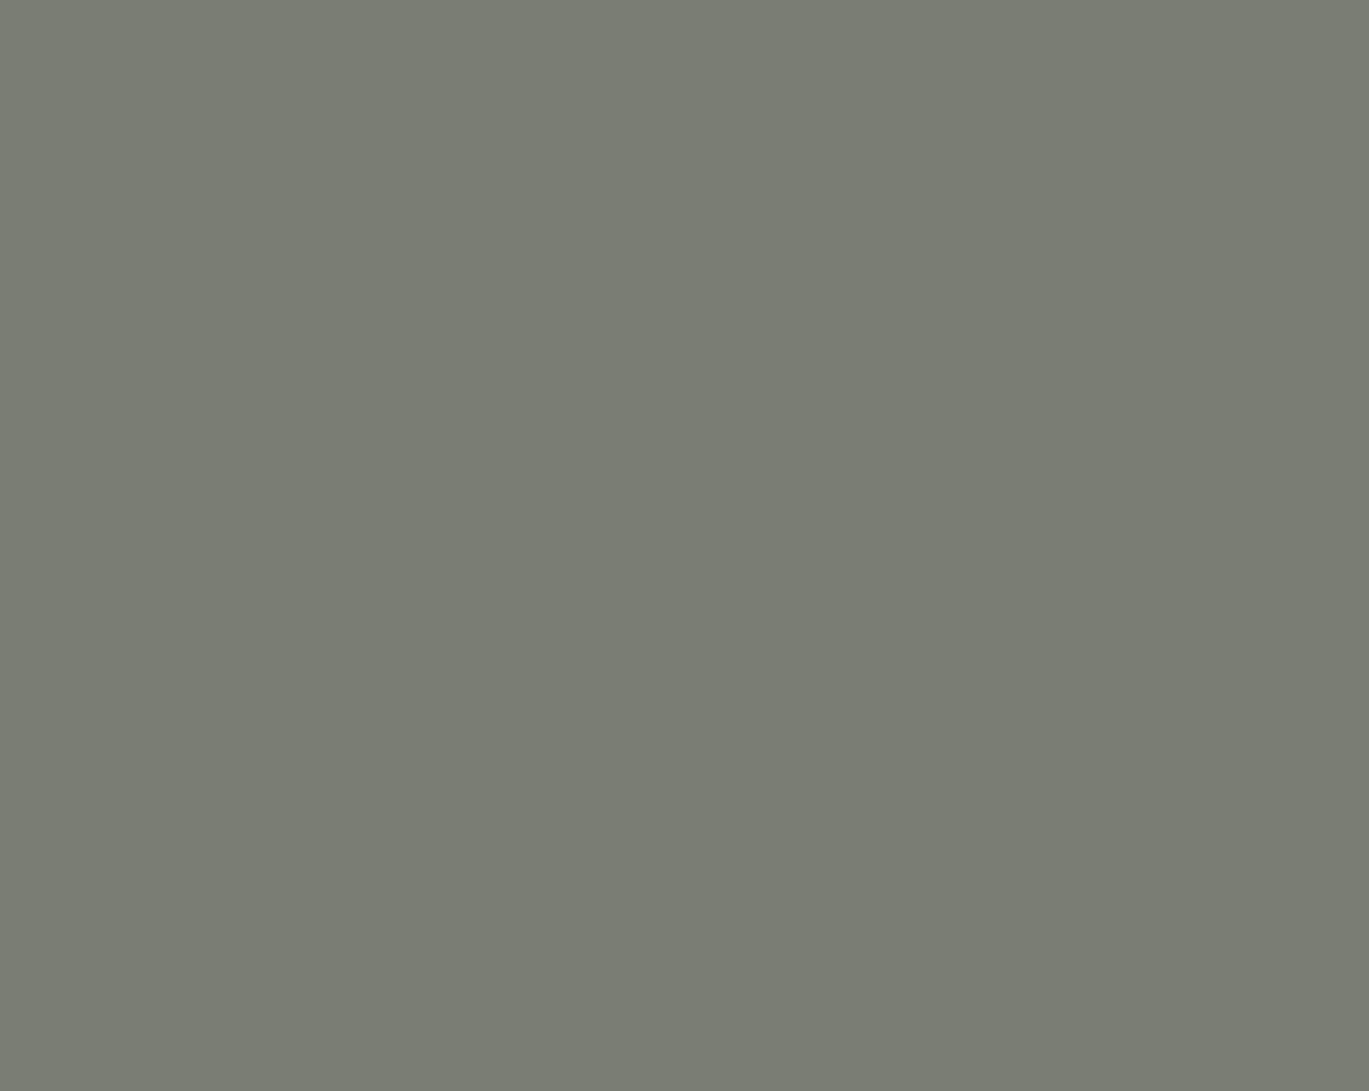 Михаил Лермонтов. Вид Тифлиса. 1837. Государственный Литературный музей, Москва